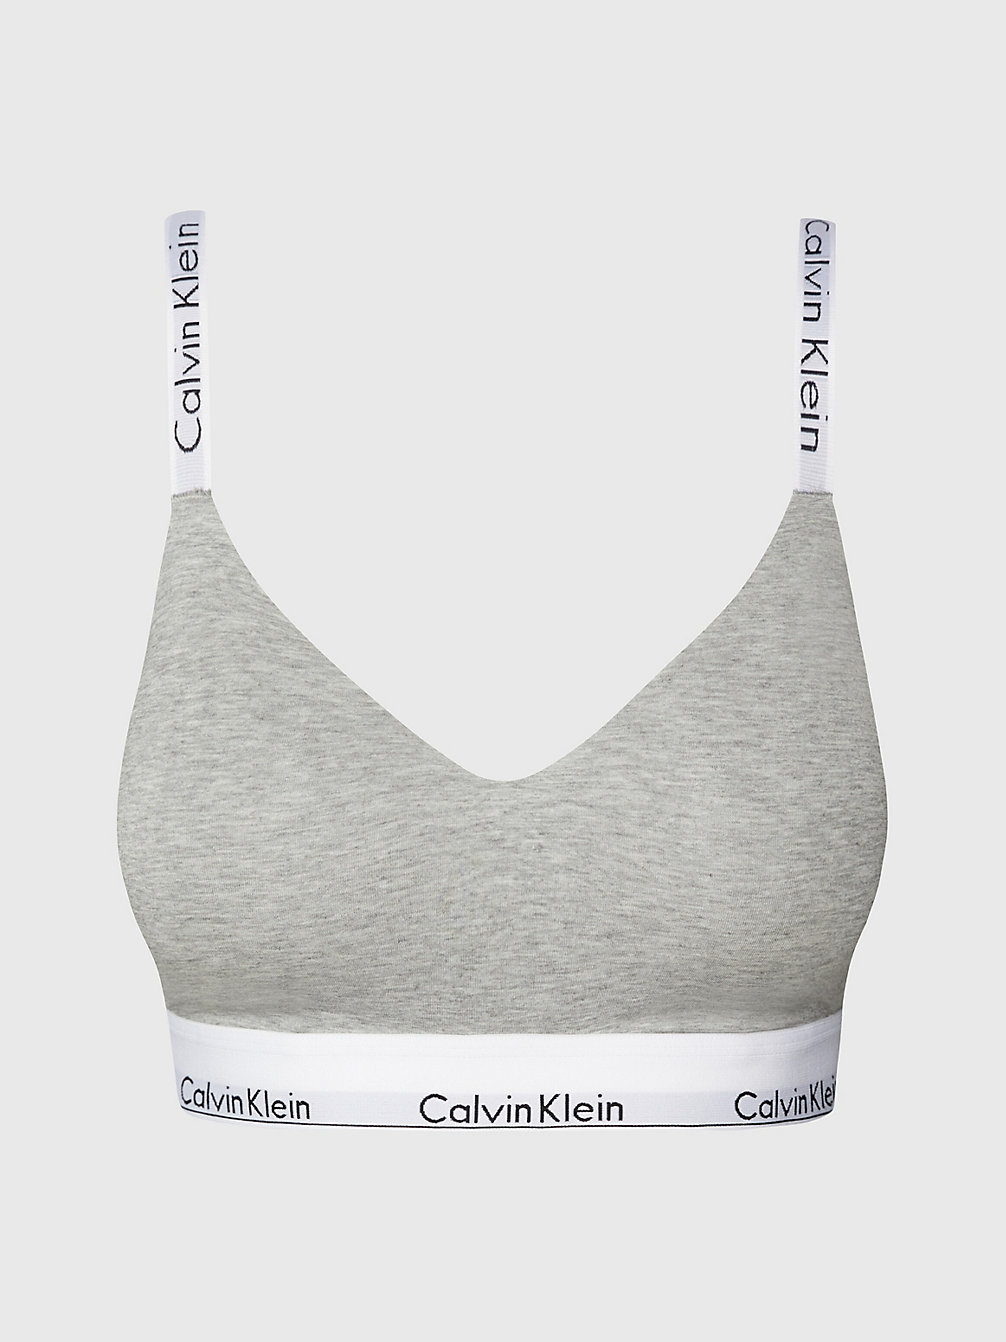 GREY HEATHER > Bralette Full Cup - Modern Cotton > undefined dames - Calvin Klein